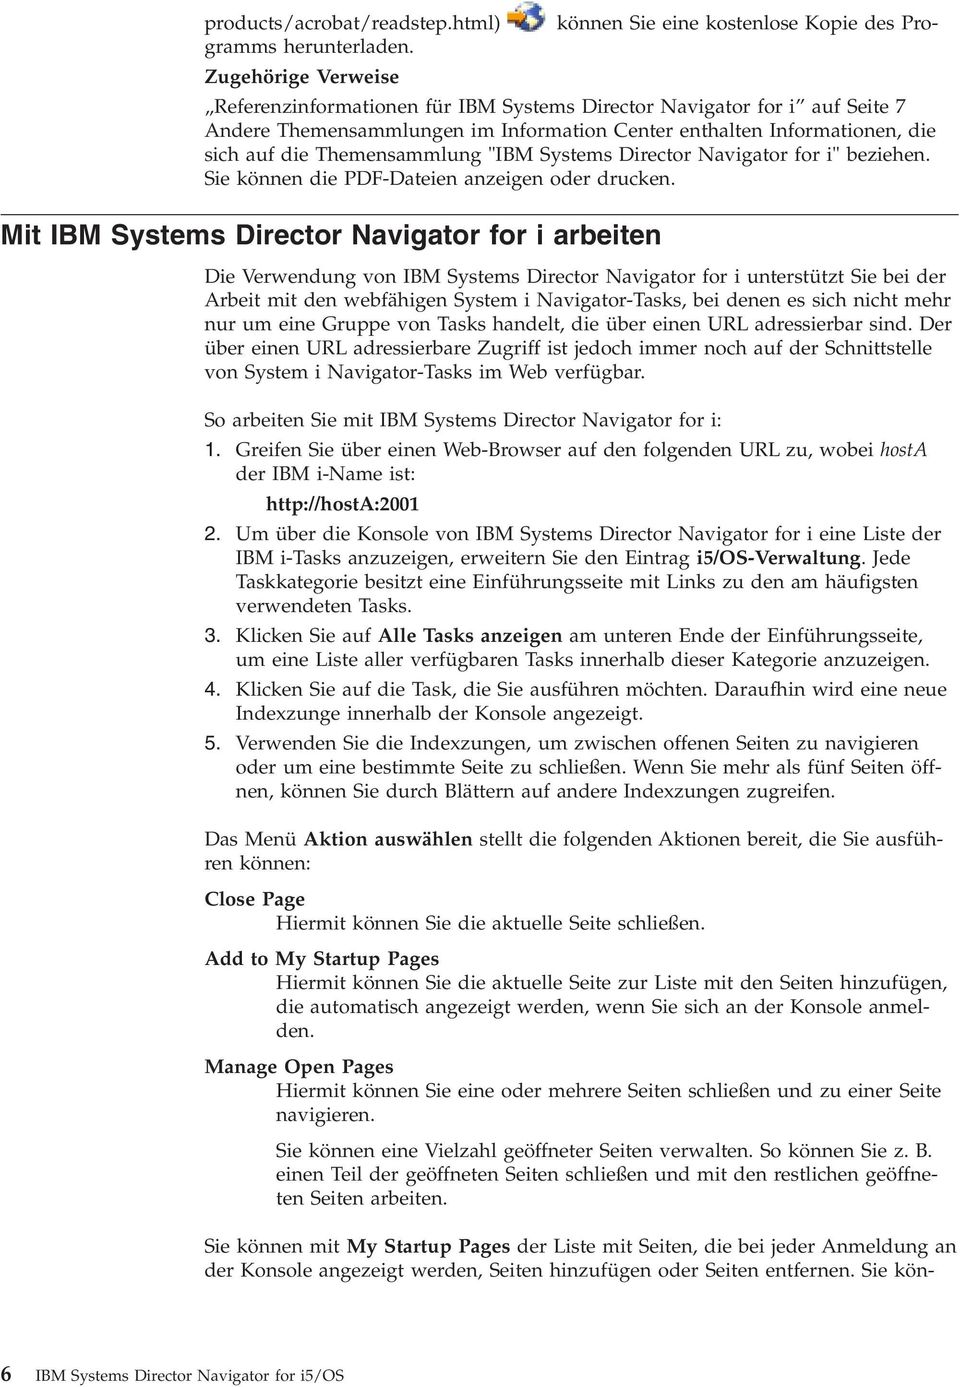 "IBM Systems Director Naigator for i" beziehen. Sie können die PDF-Dateien anzeigen oder drucken.